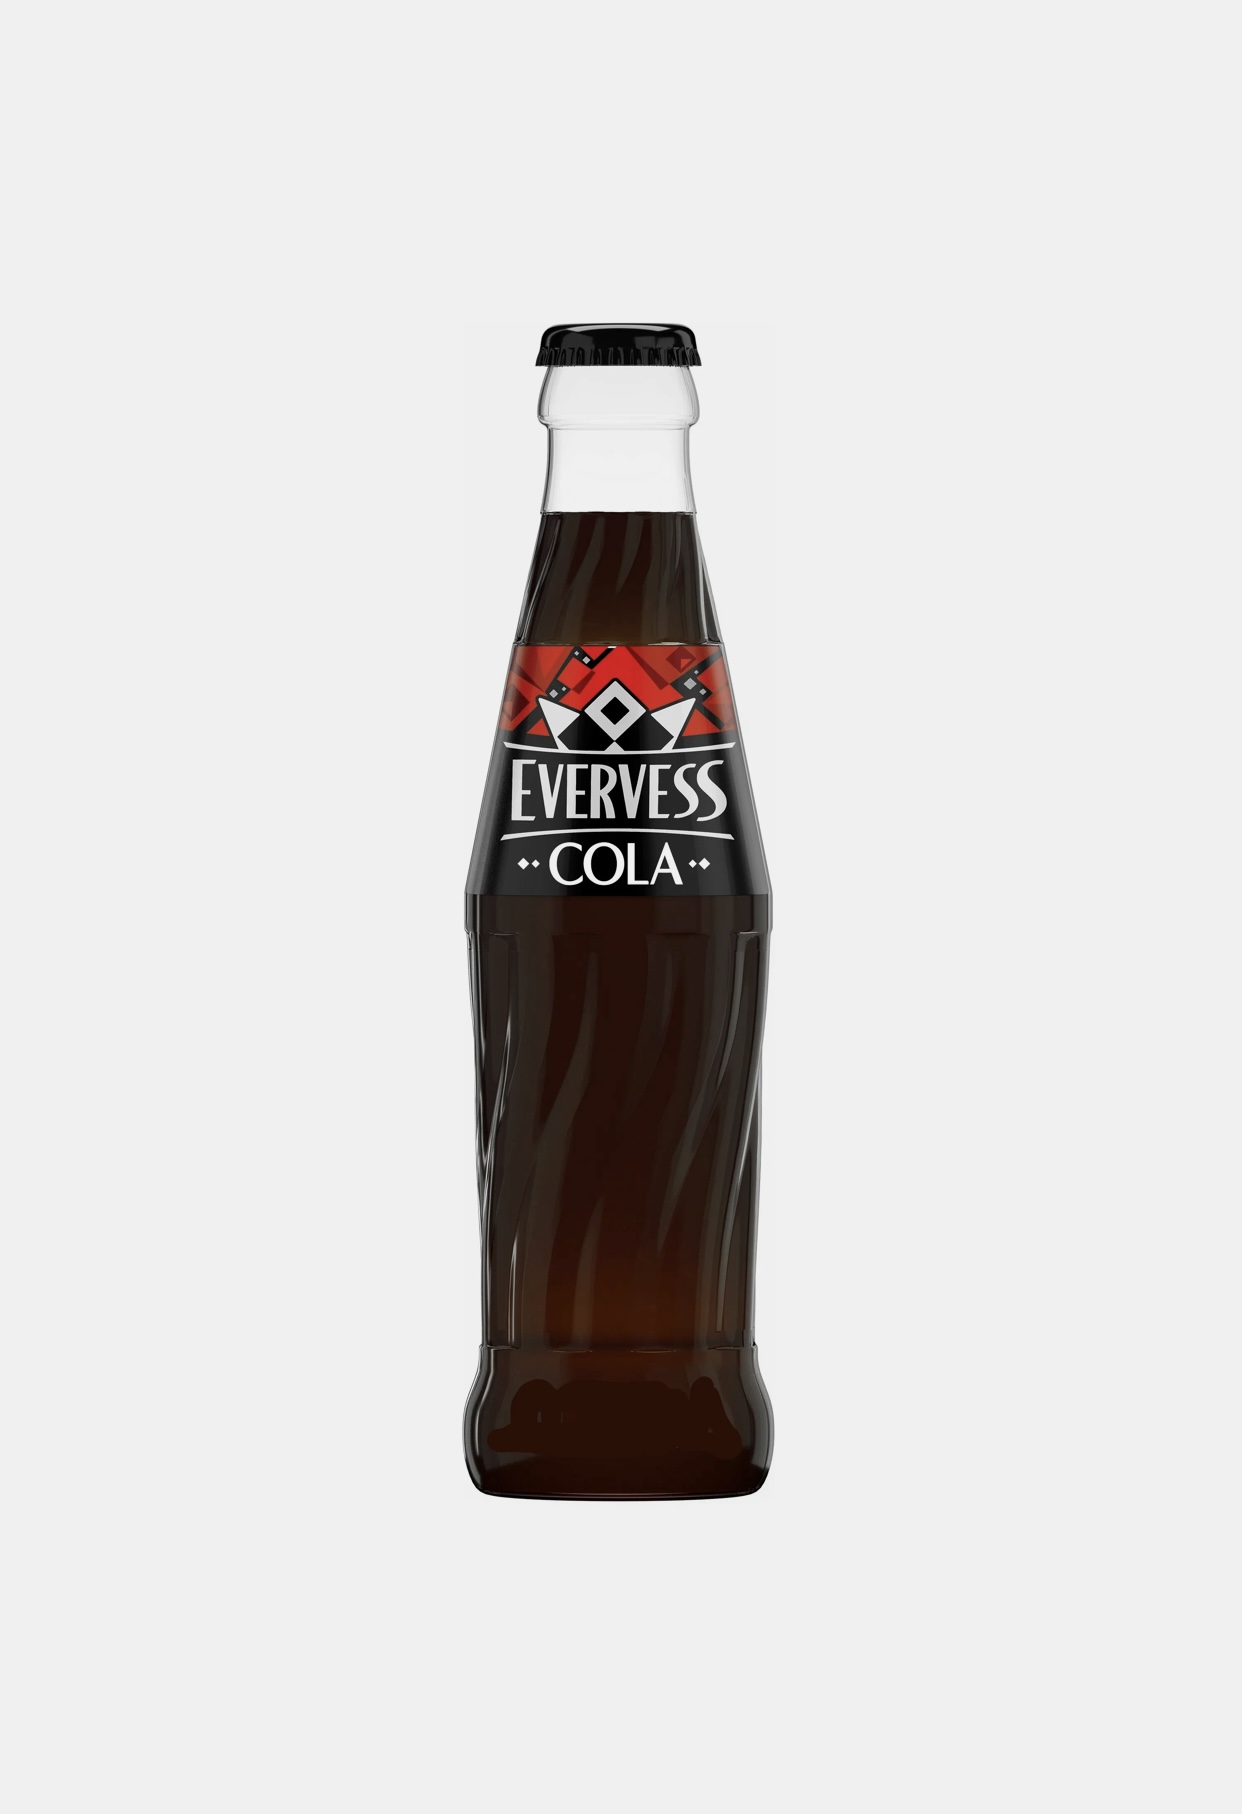 Evervess cola zero